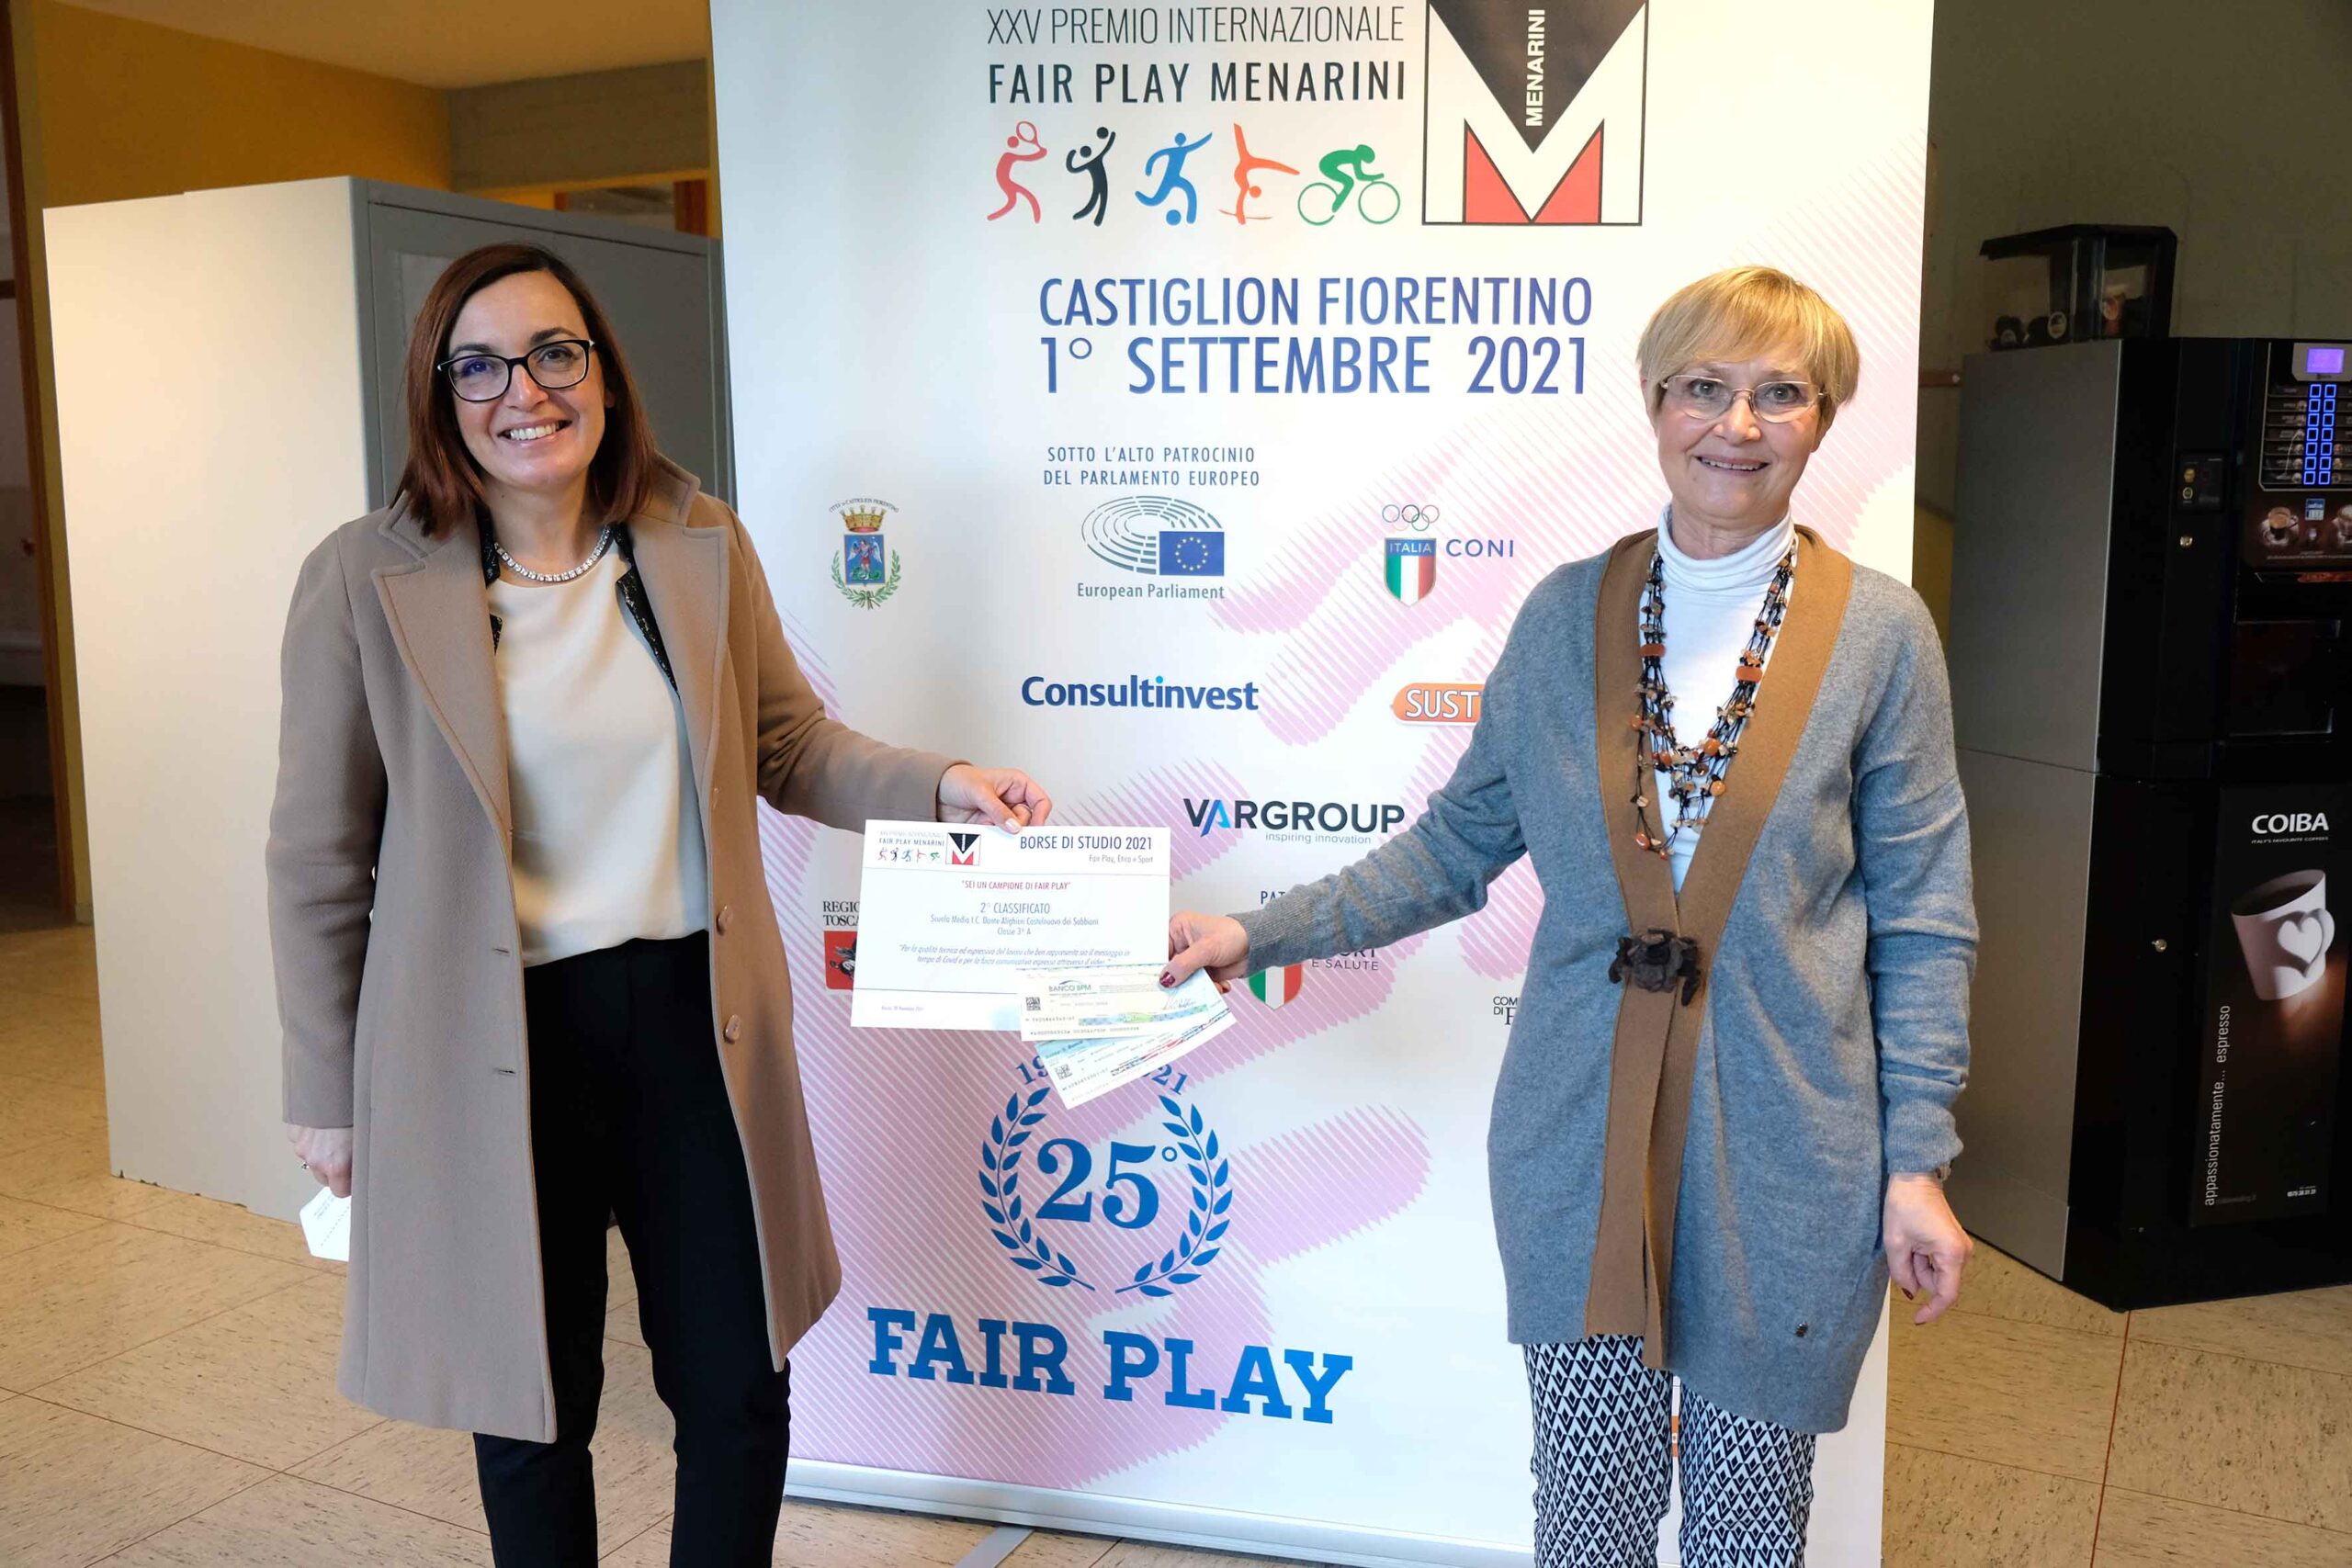 Premio internazionale Fair Play Menarini, tre giorni di premiazioni